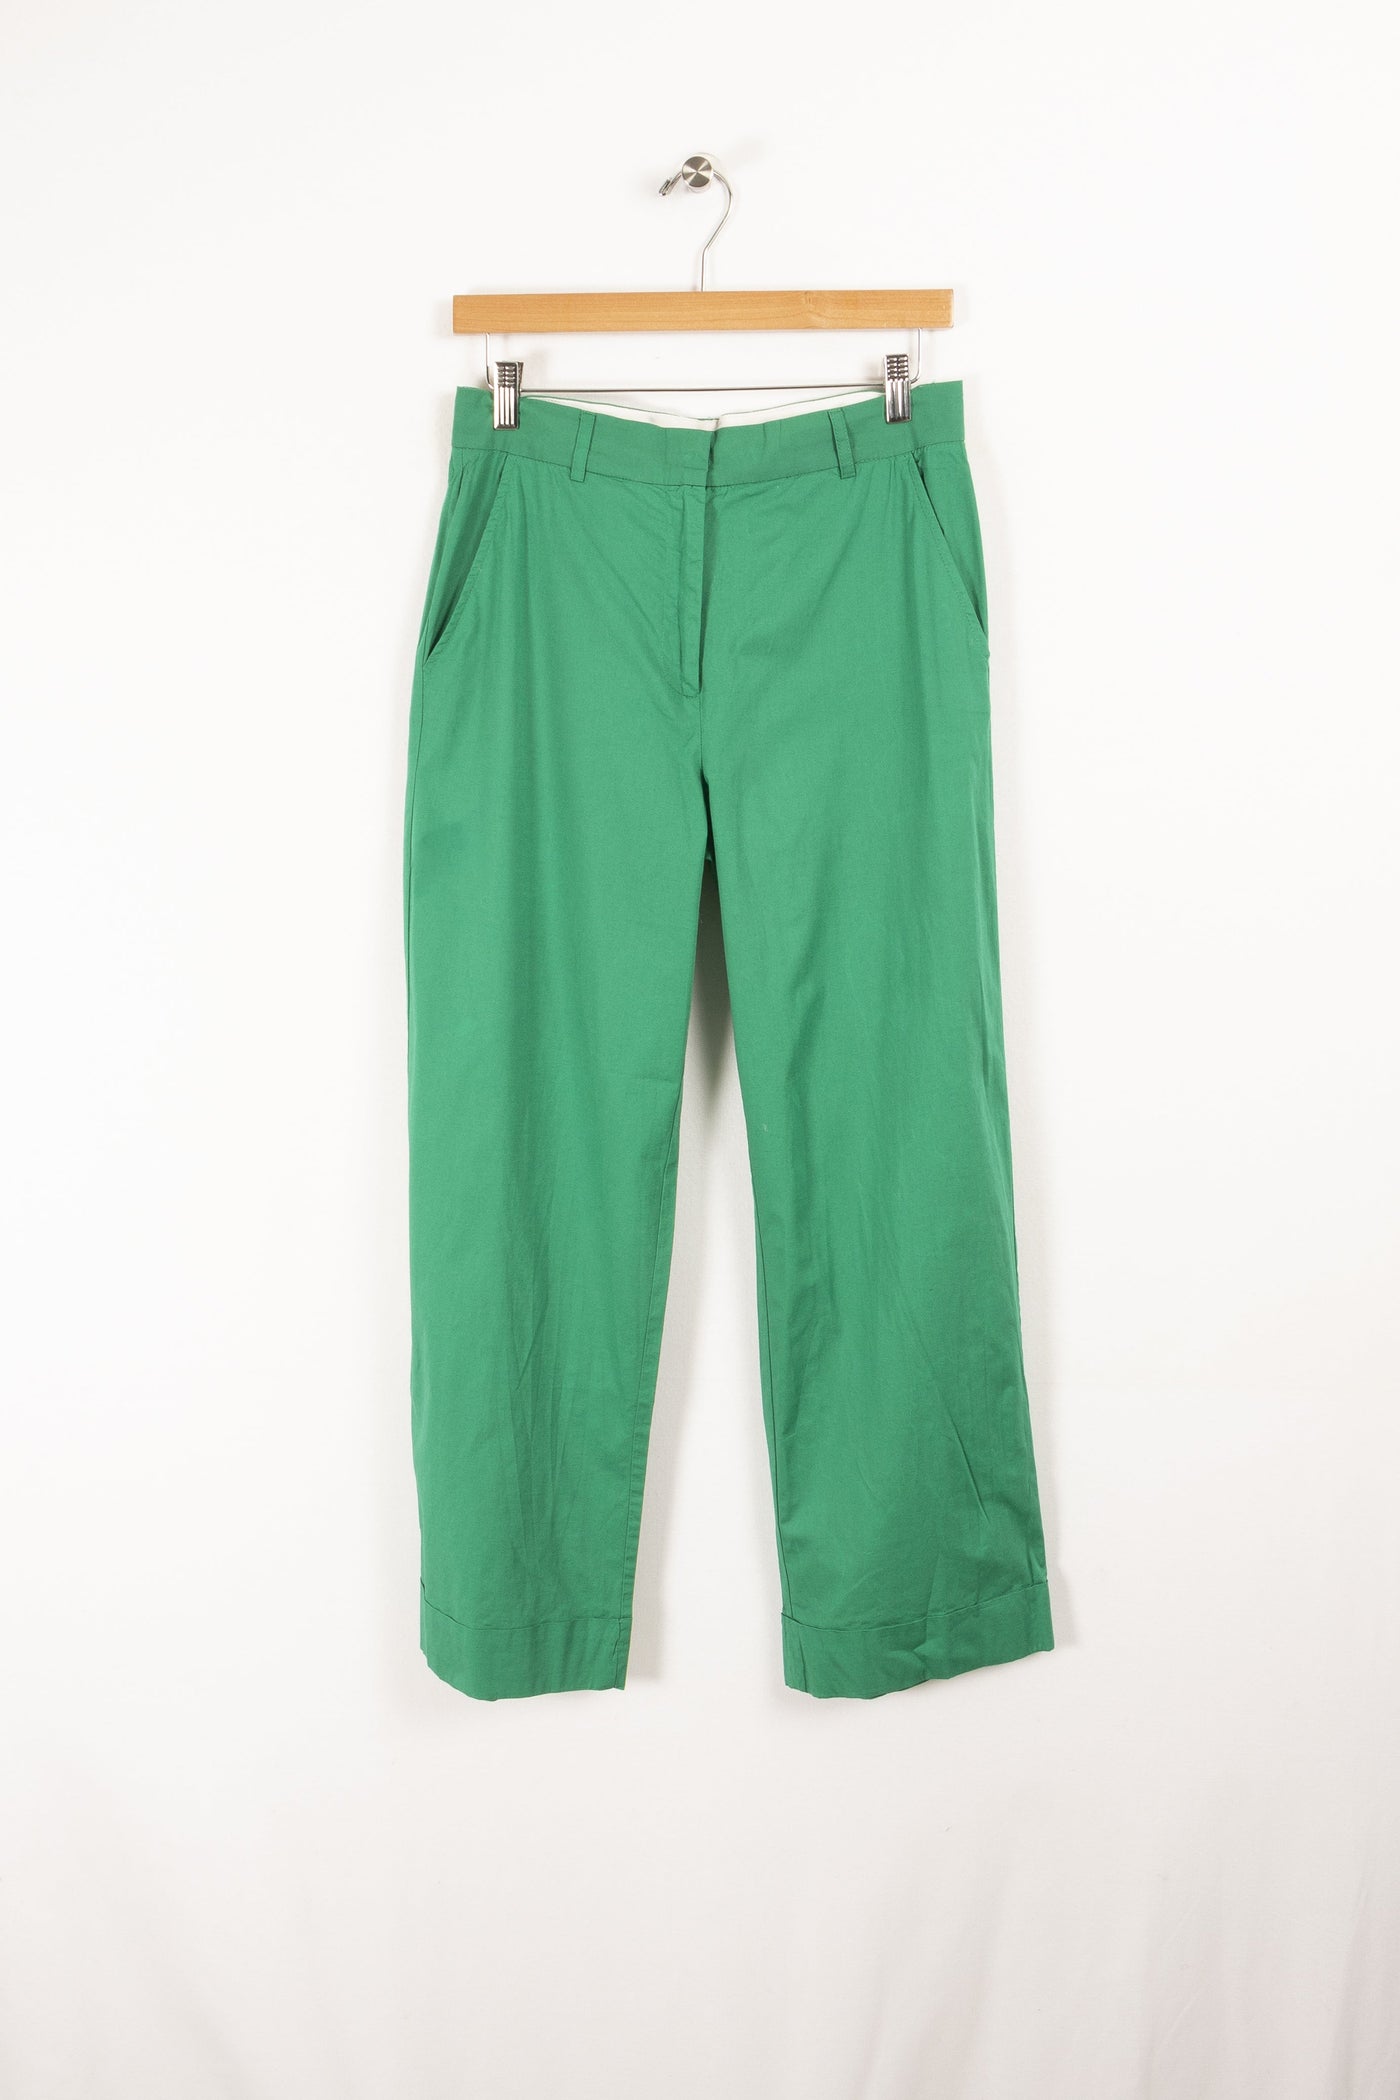 Pantalon vert - Taille M/38